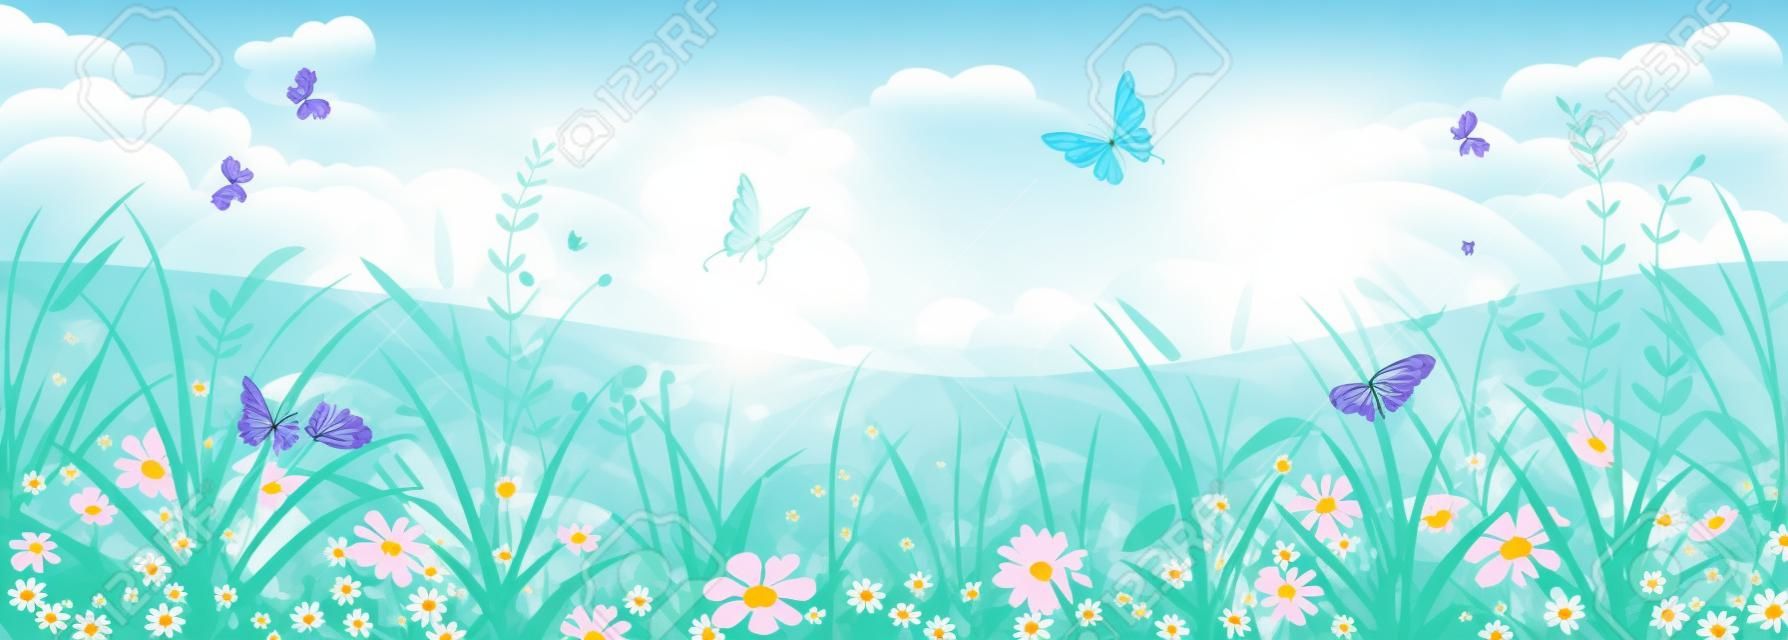 Bloemen zomer of voorjaar landschap, weide met bloemen, blauwe lucht en vlinders